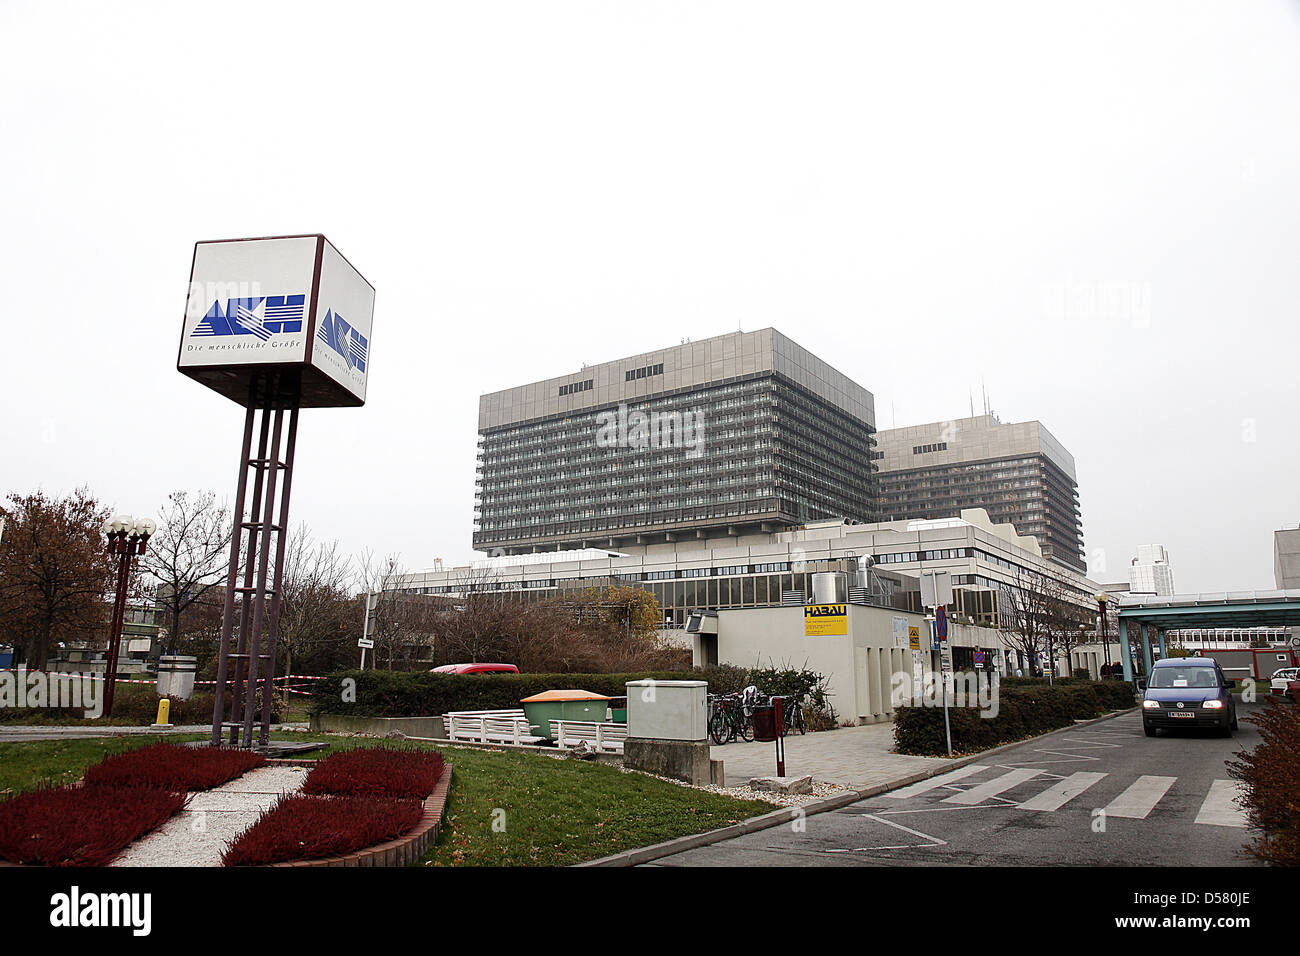 Gesamtansicht der Allgemeines Krankenhaus der Stadt Wien Krankenhaus (AKH)  wo George Michael derzeit behandelt wird. Wien Stockfotografie - Alamy